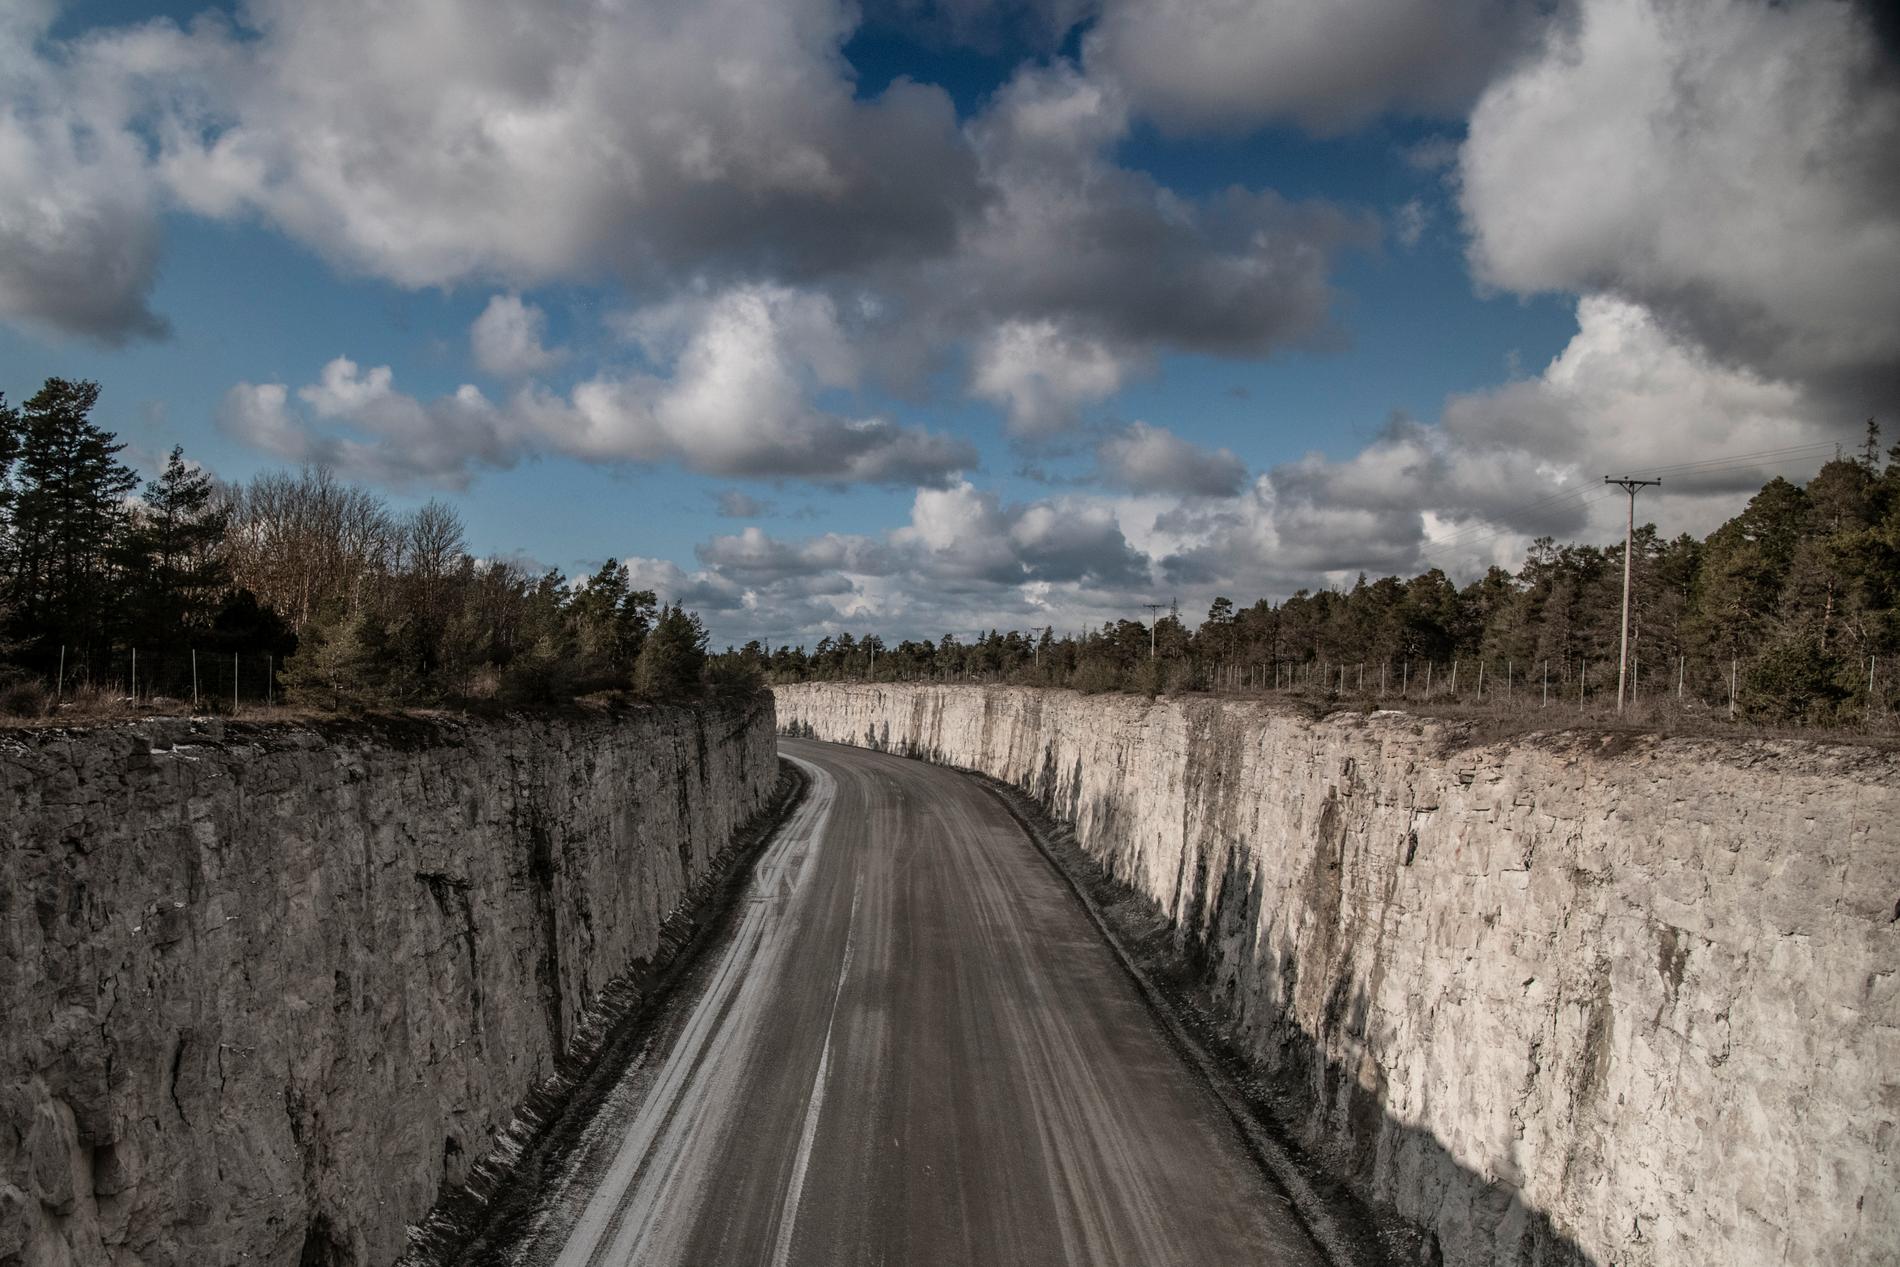 Cementas fabrik i Slite på Gotland har en vision om att cementen ska vara klimatneutral år 2030.